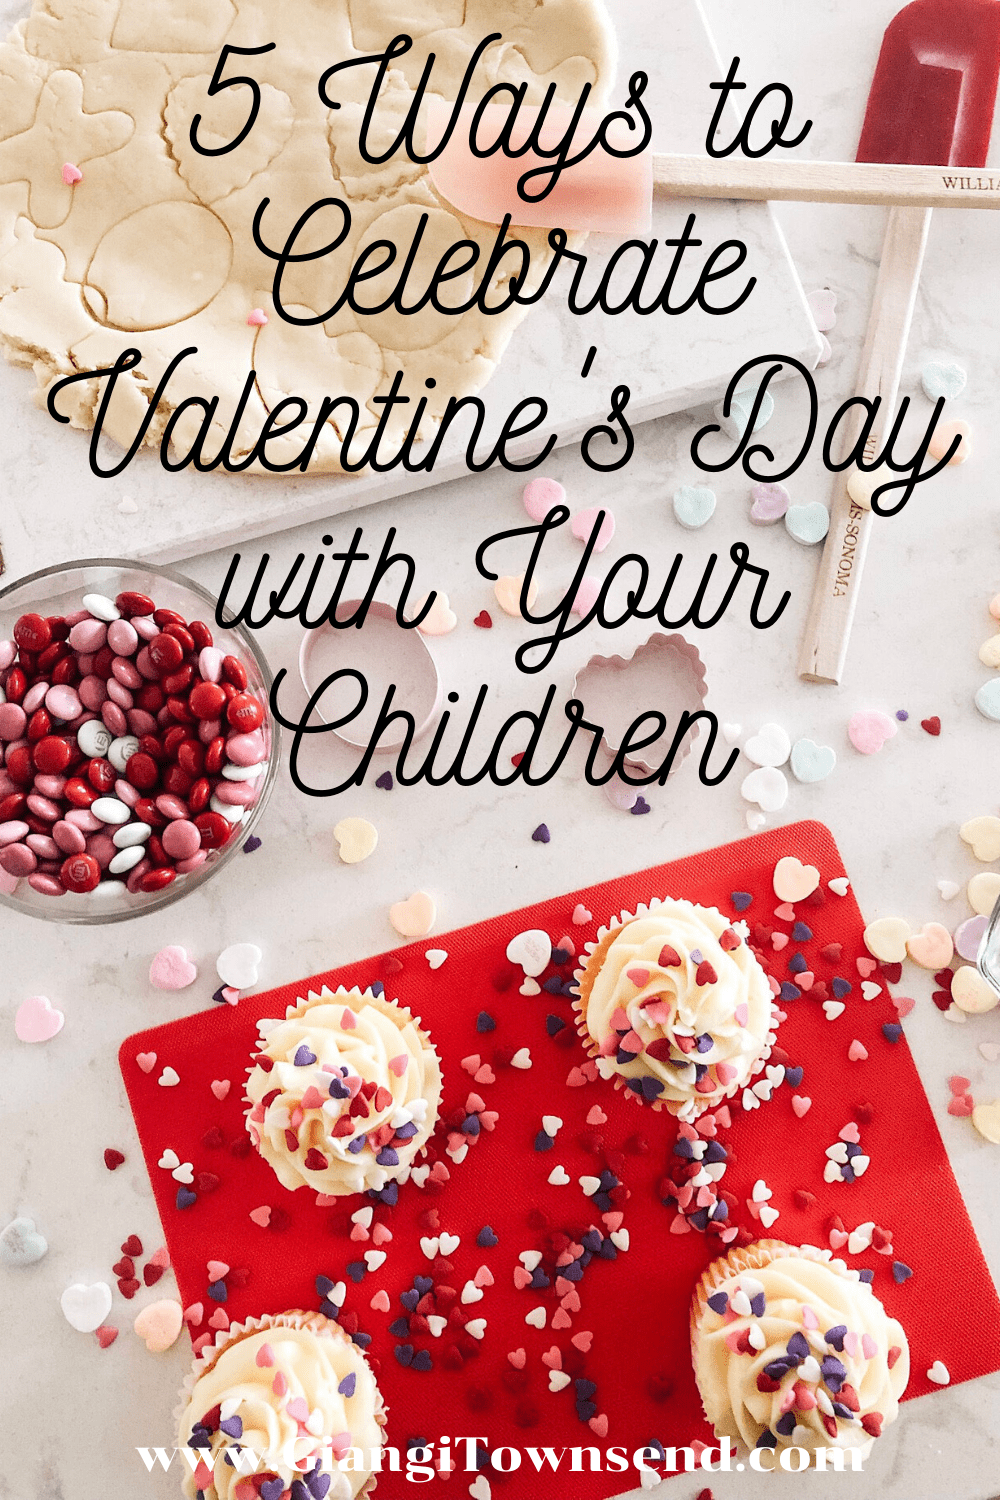 5 Ways to Enjoy Valentine's Day with your Children